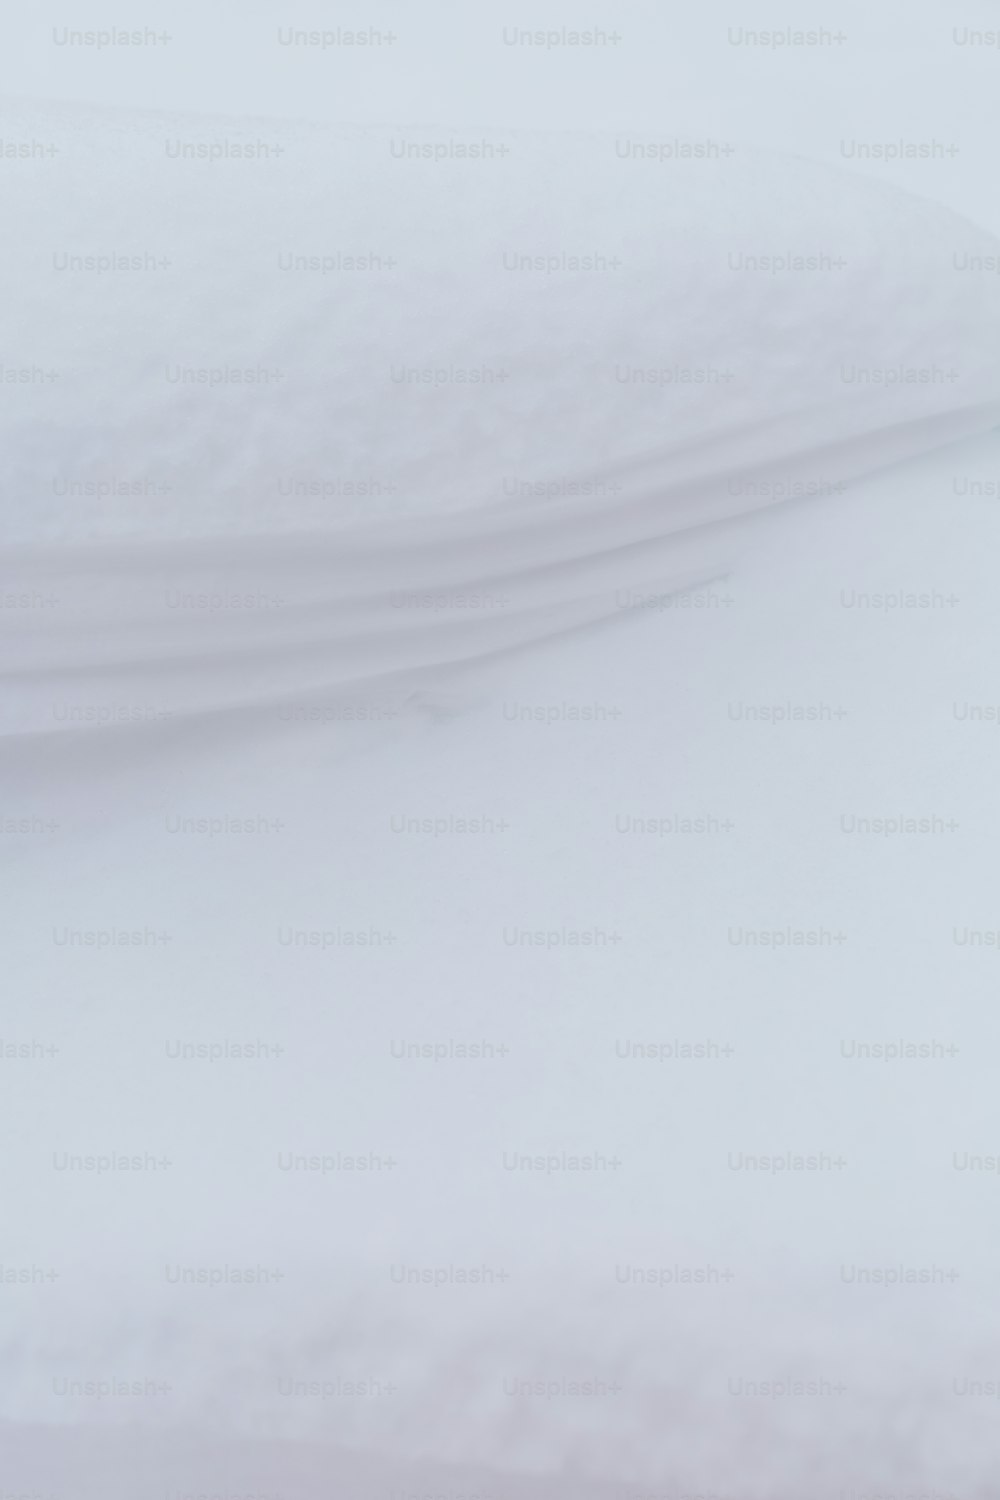 Un snowboarder descend une colline dans la neige